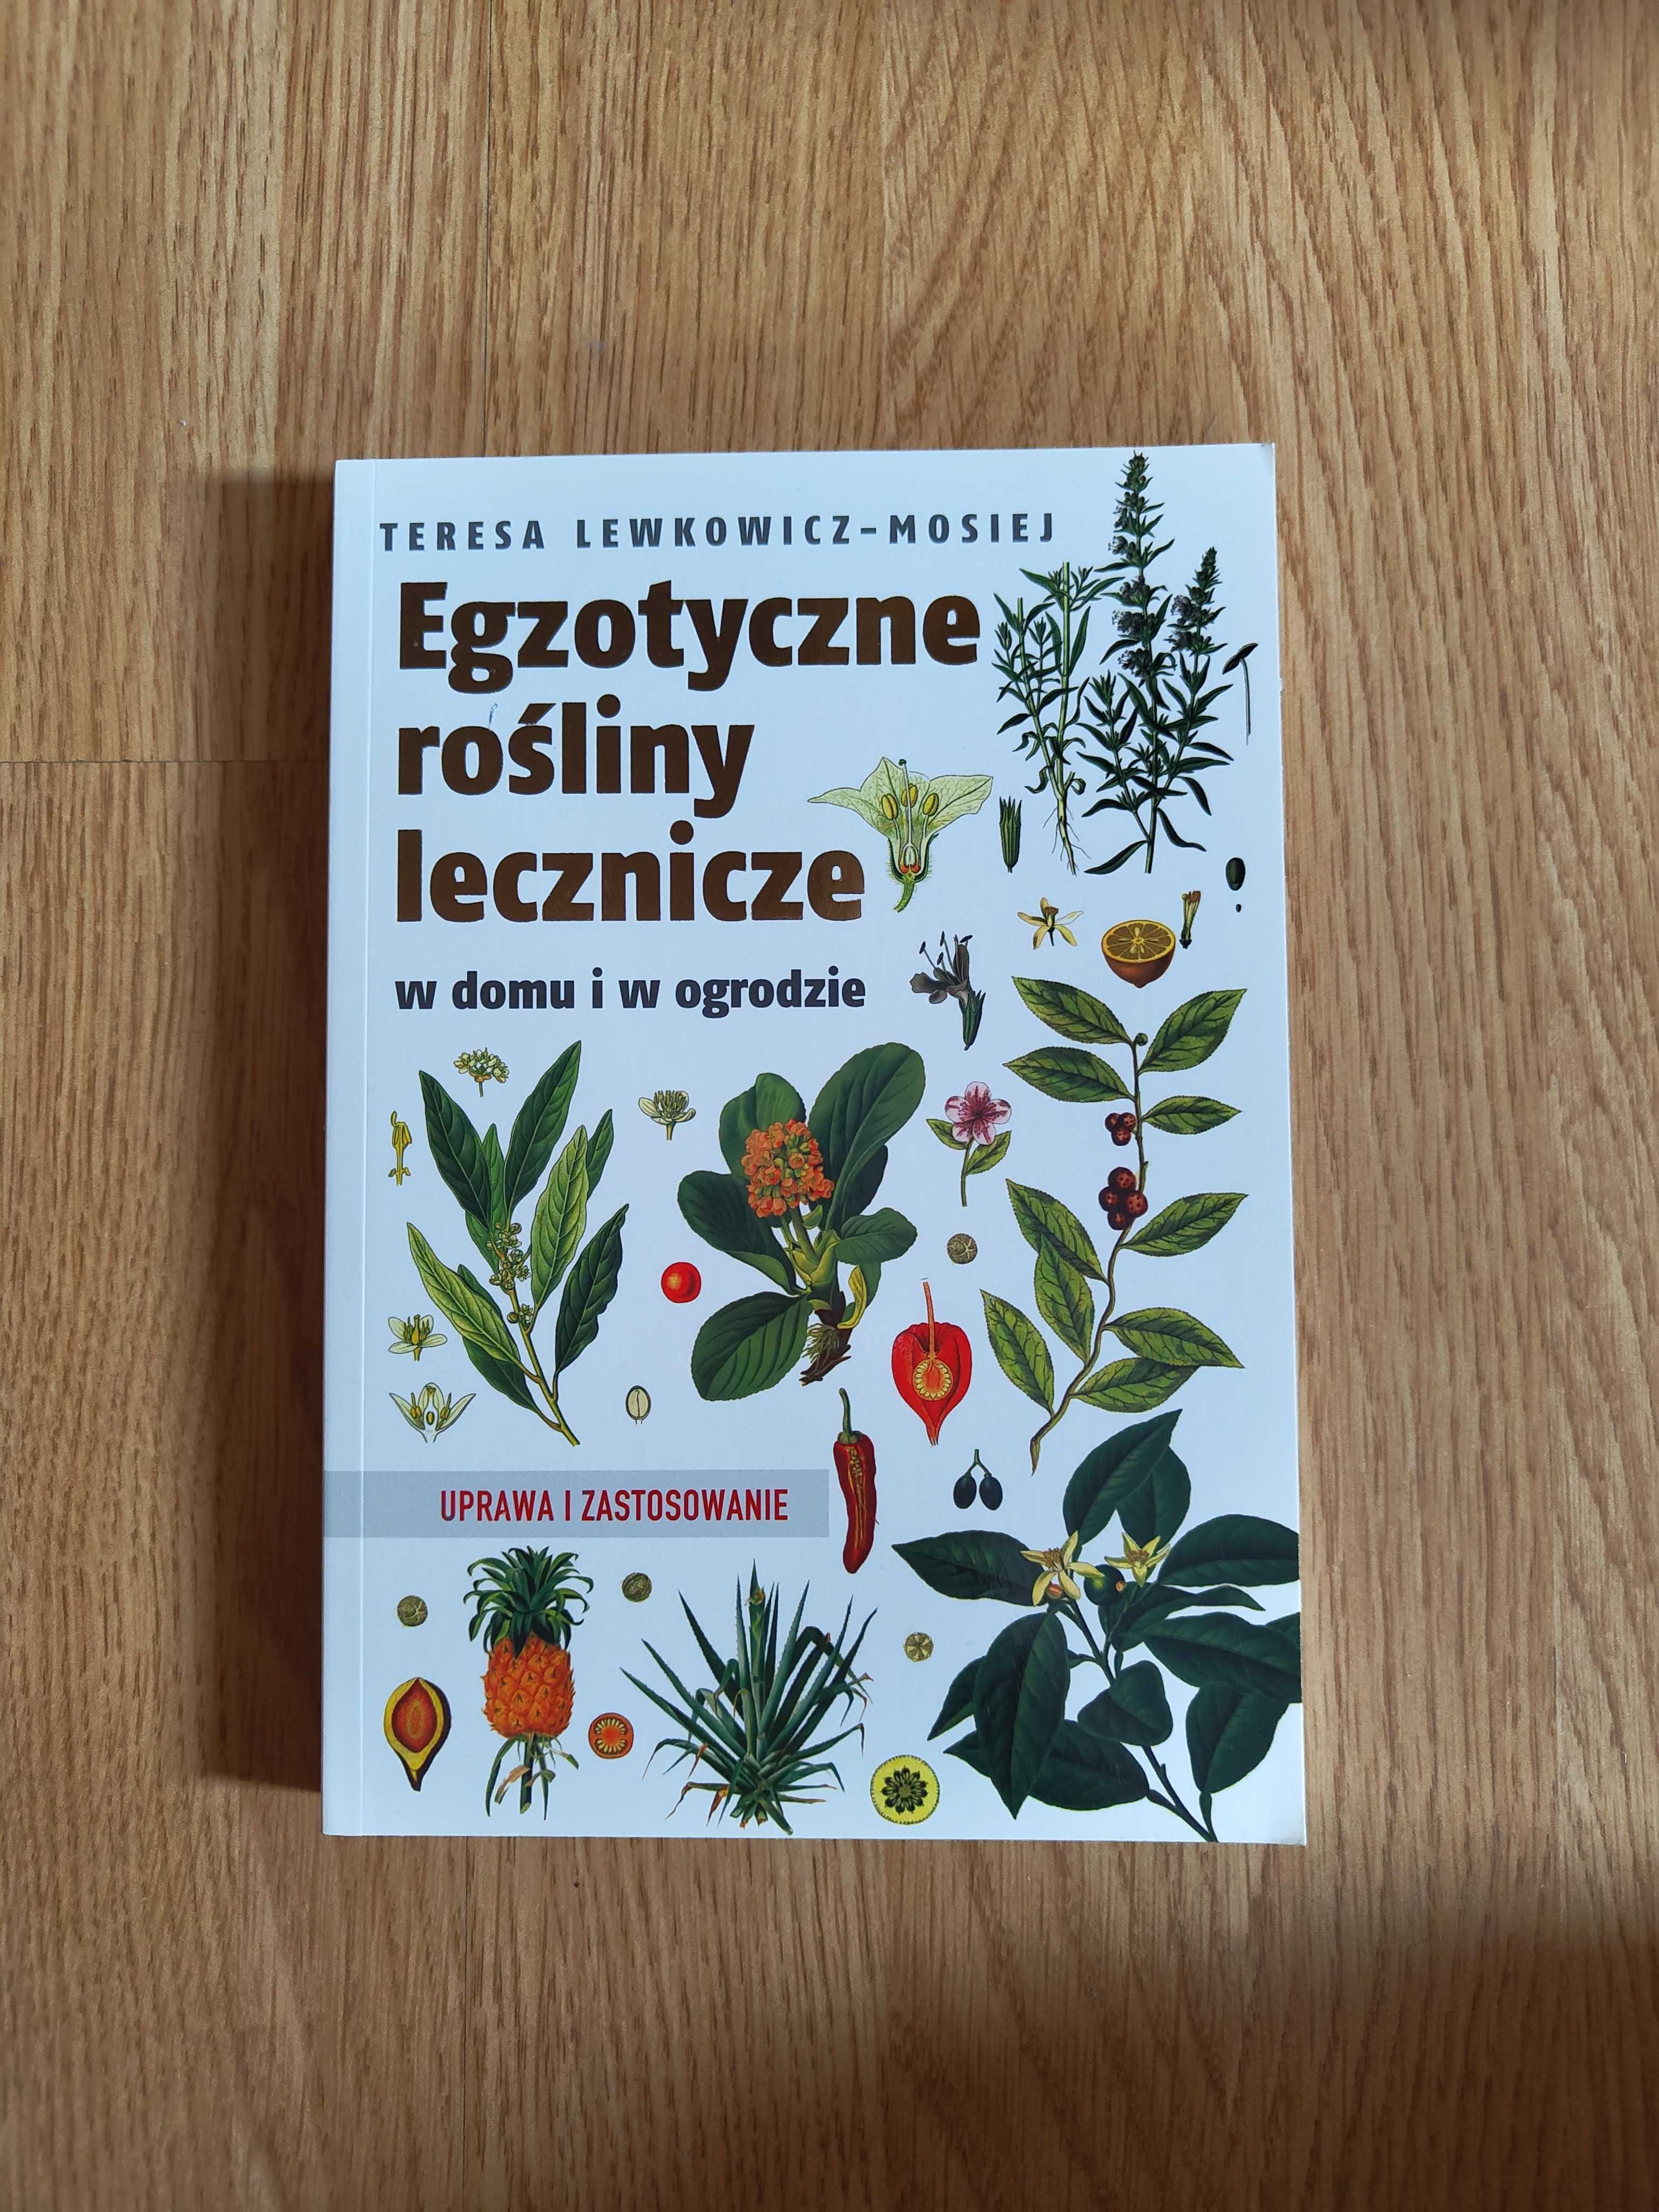 Egzotyczne rośliny lecznicze - uprawa i zastosowanie